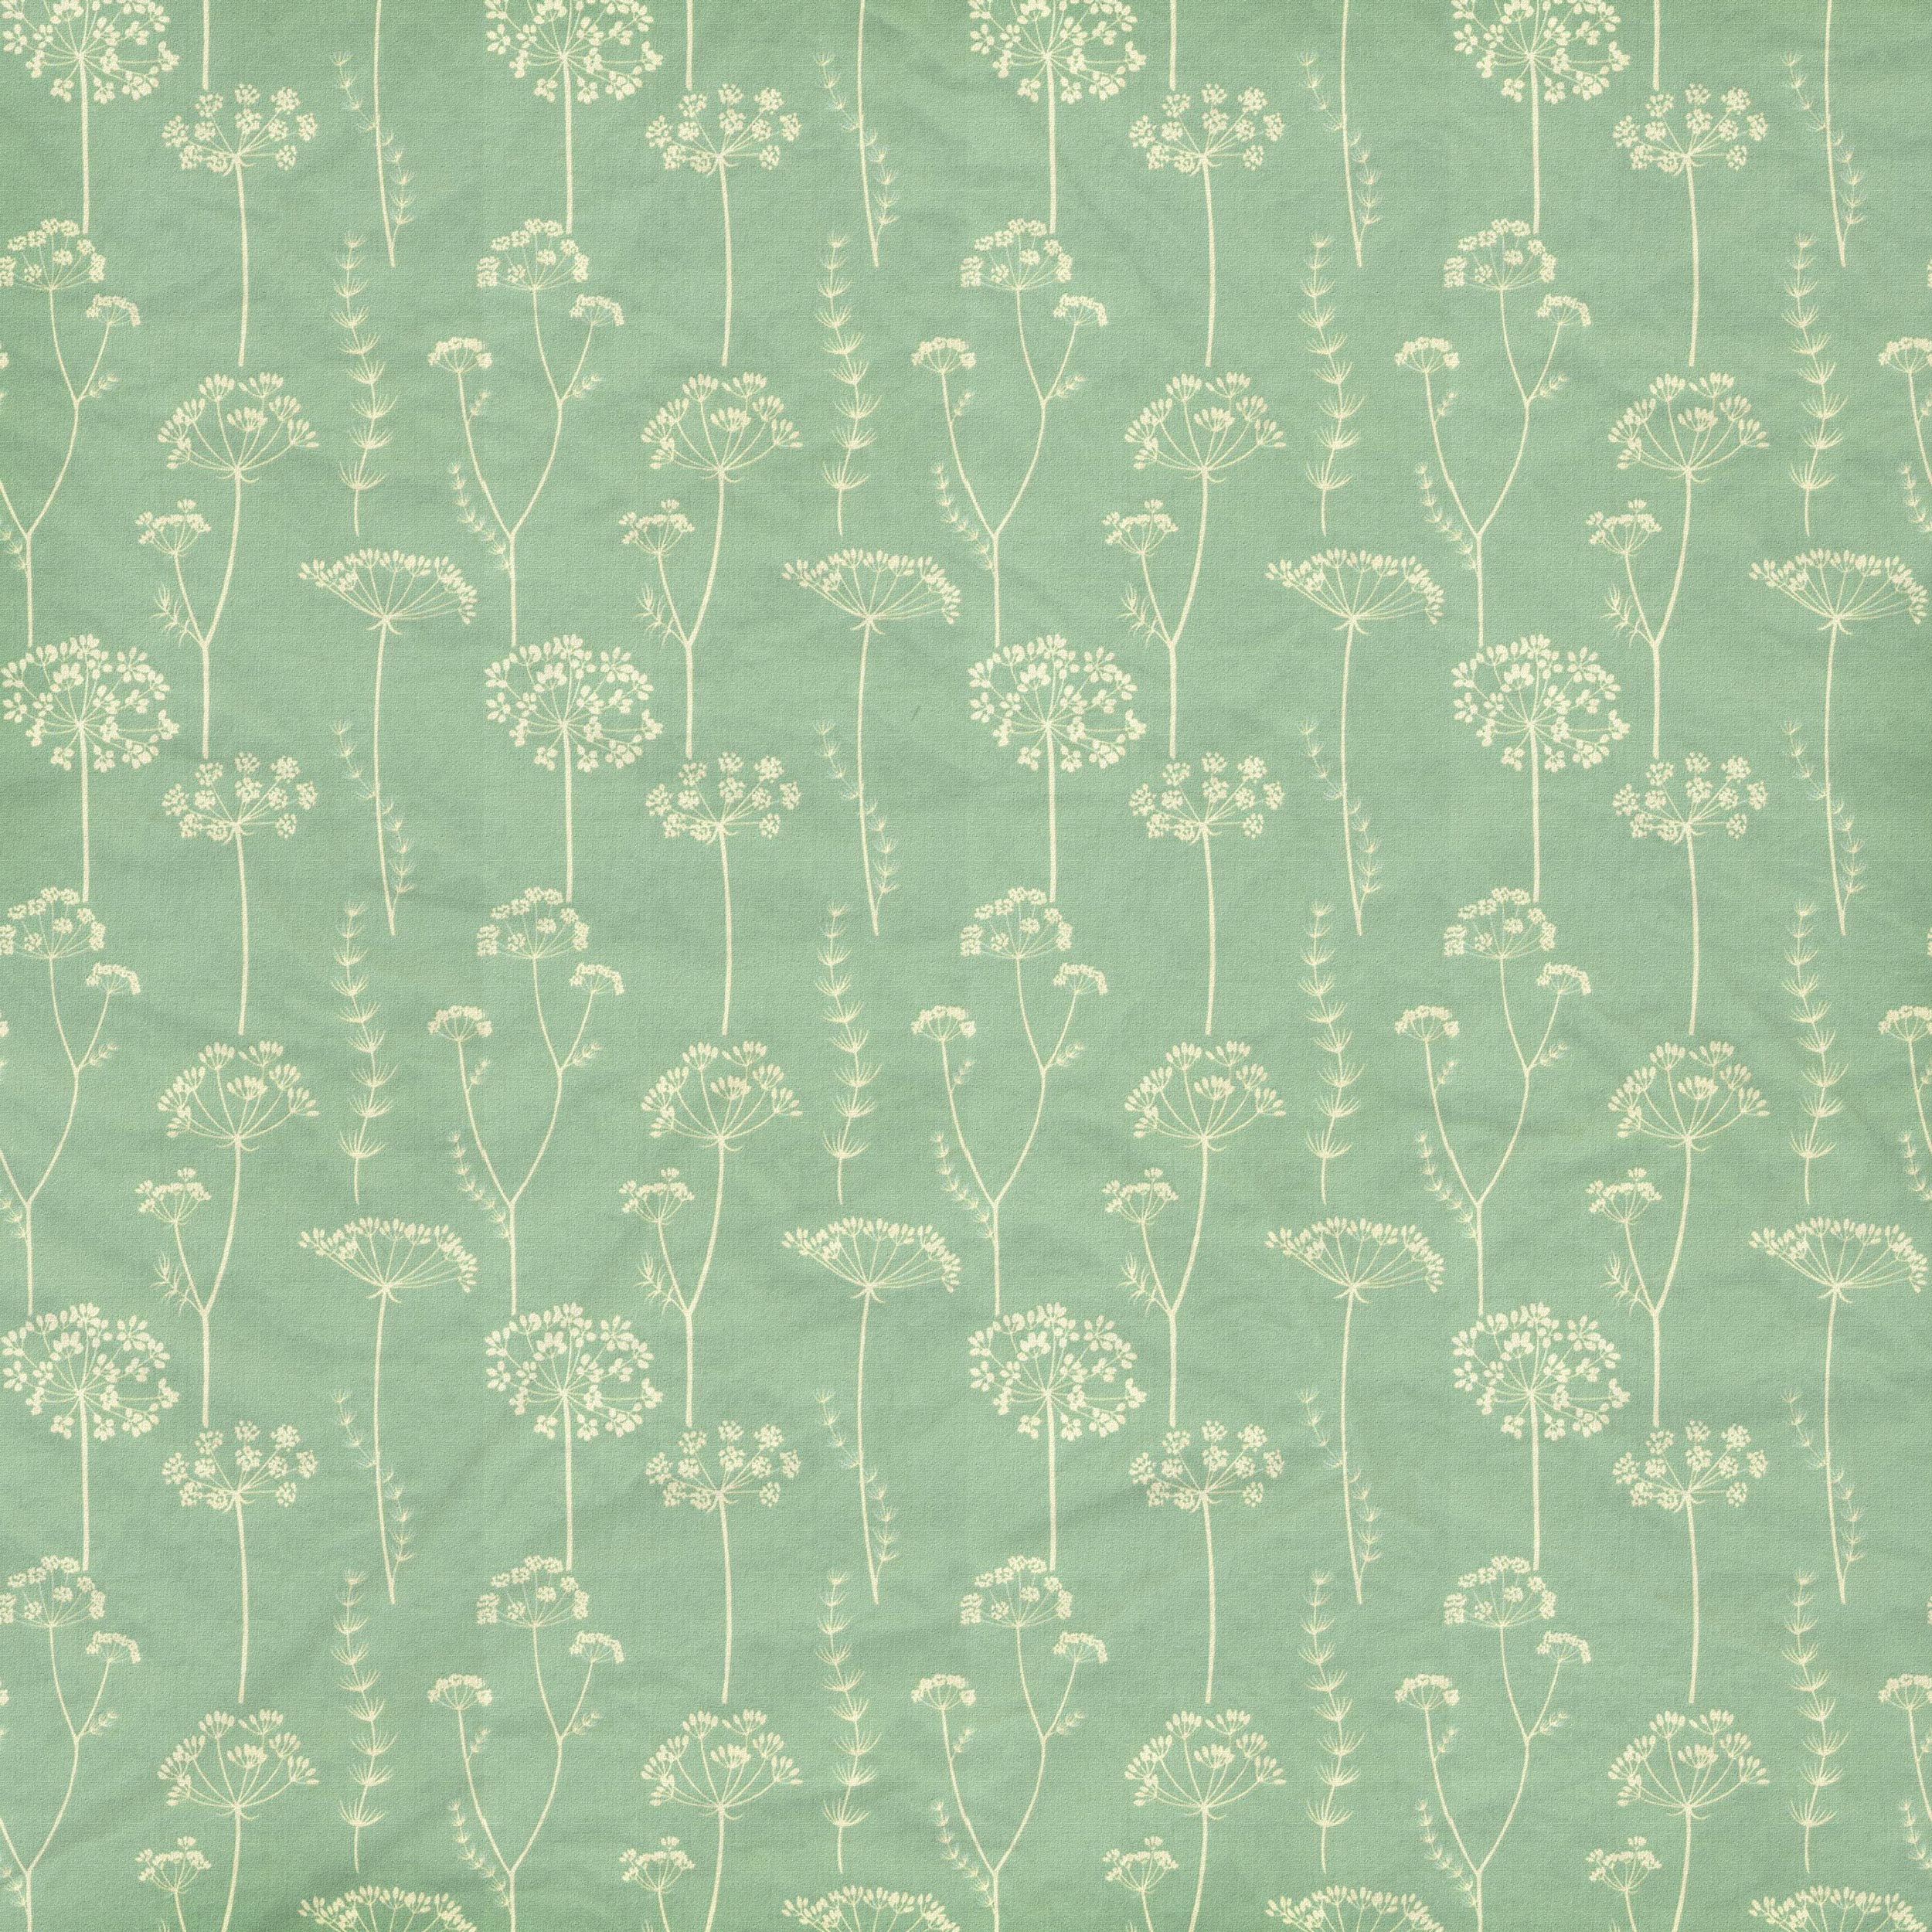 壁紙 背景イラスト 花の模様 柄 パターン No 256 青緑 布生地 シワ1